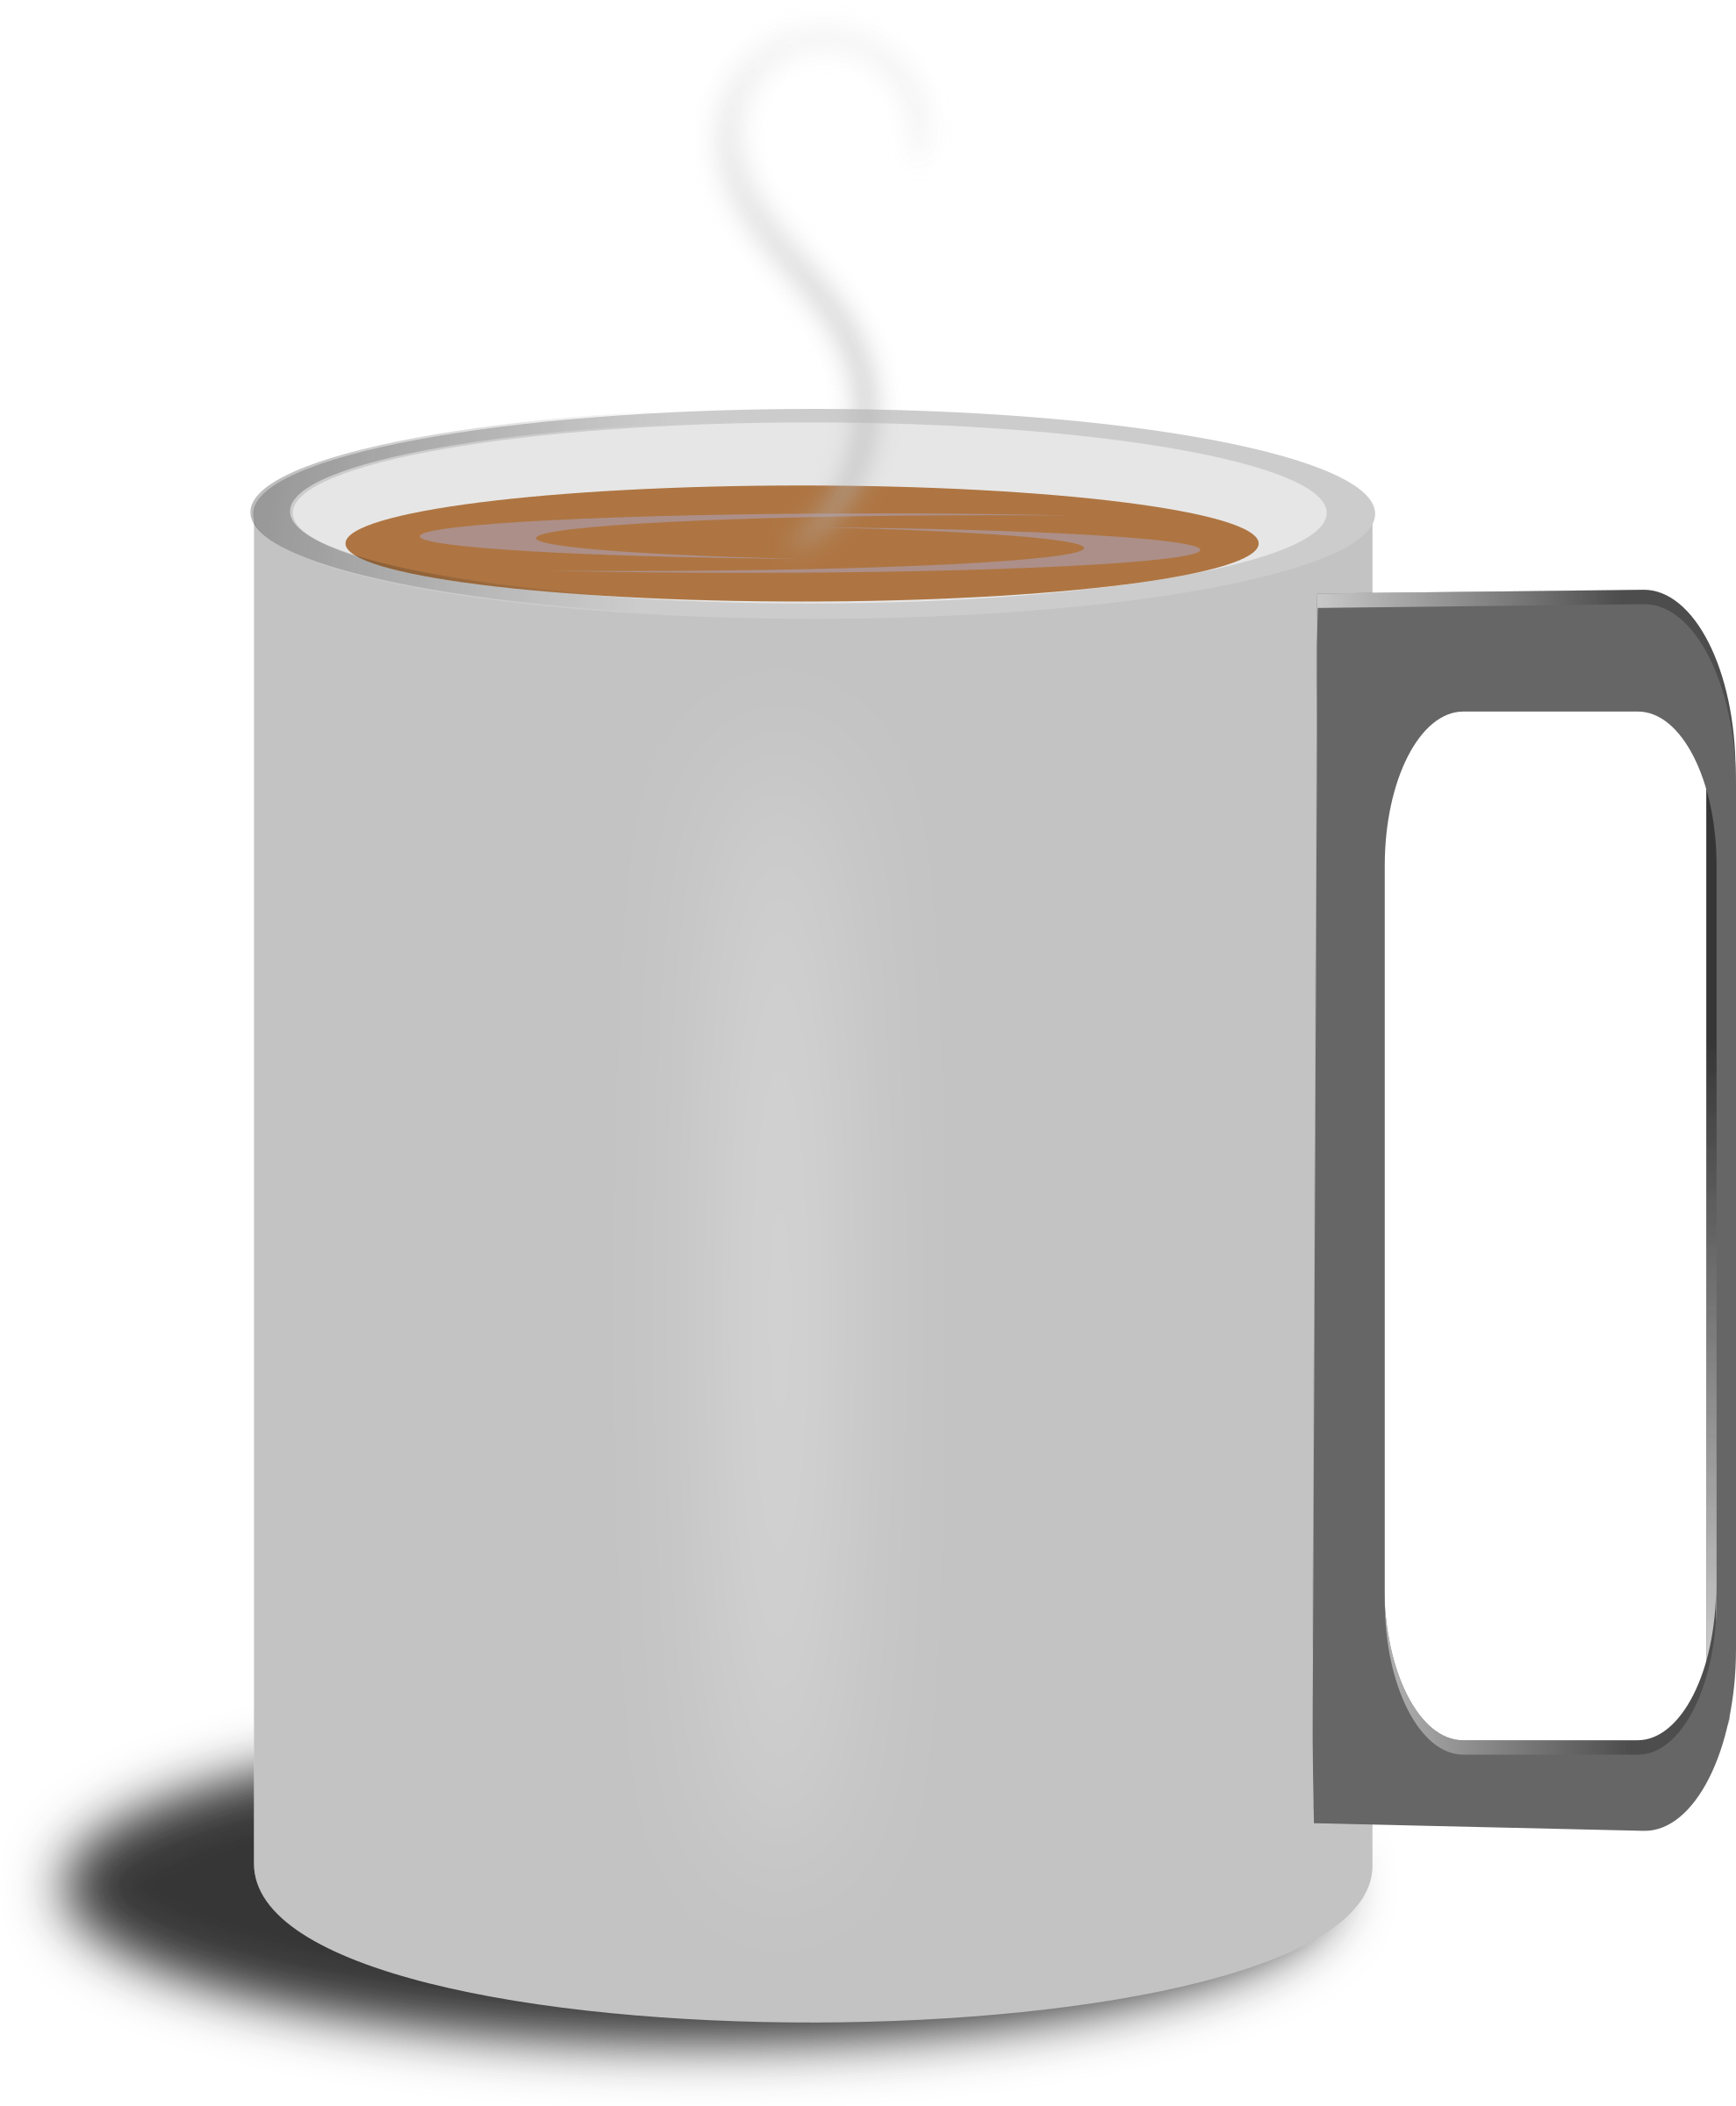 Coffee cup-2 Clip arts